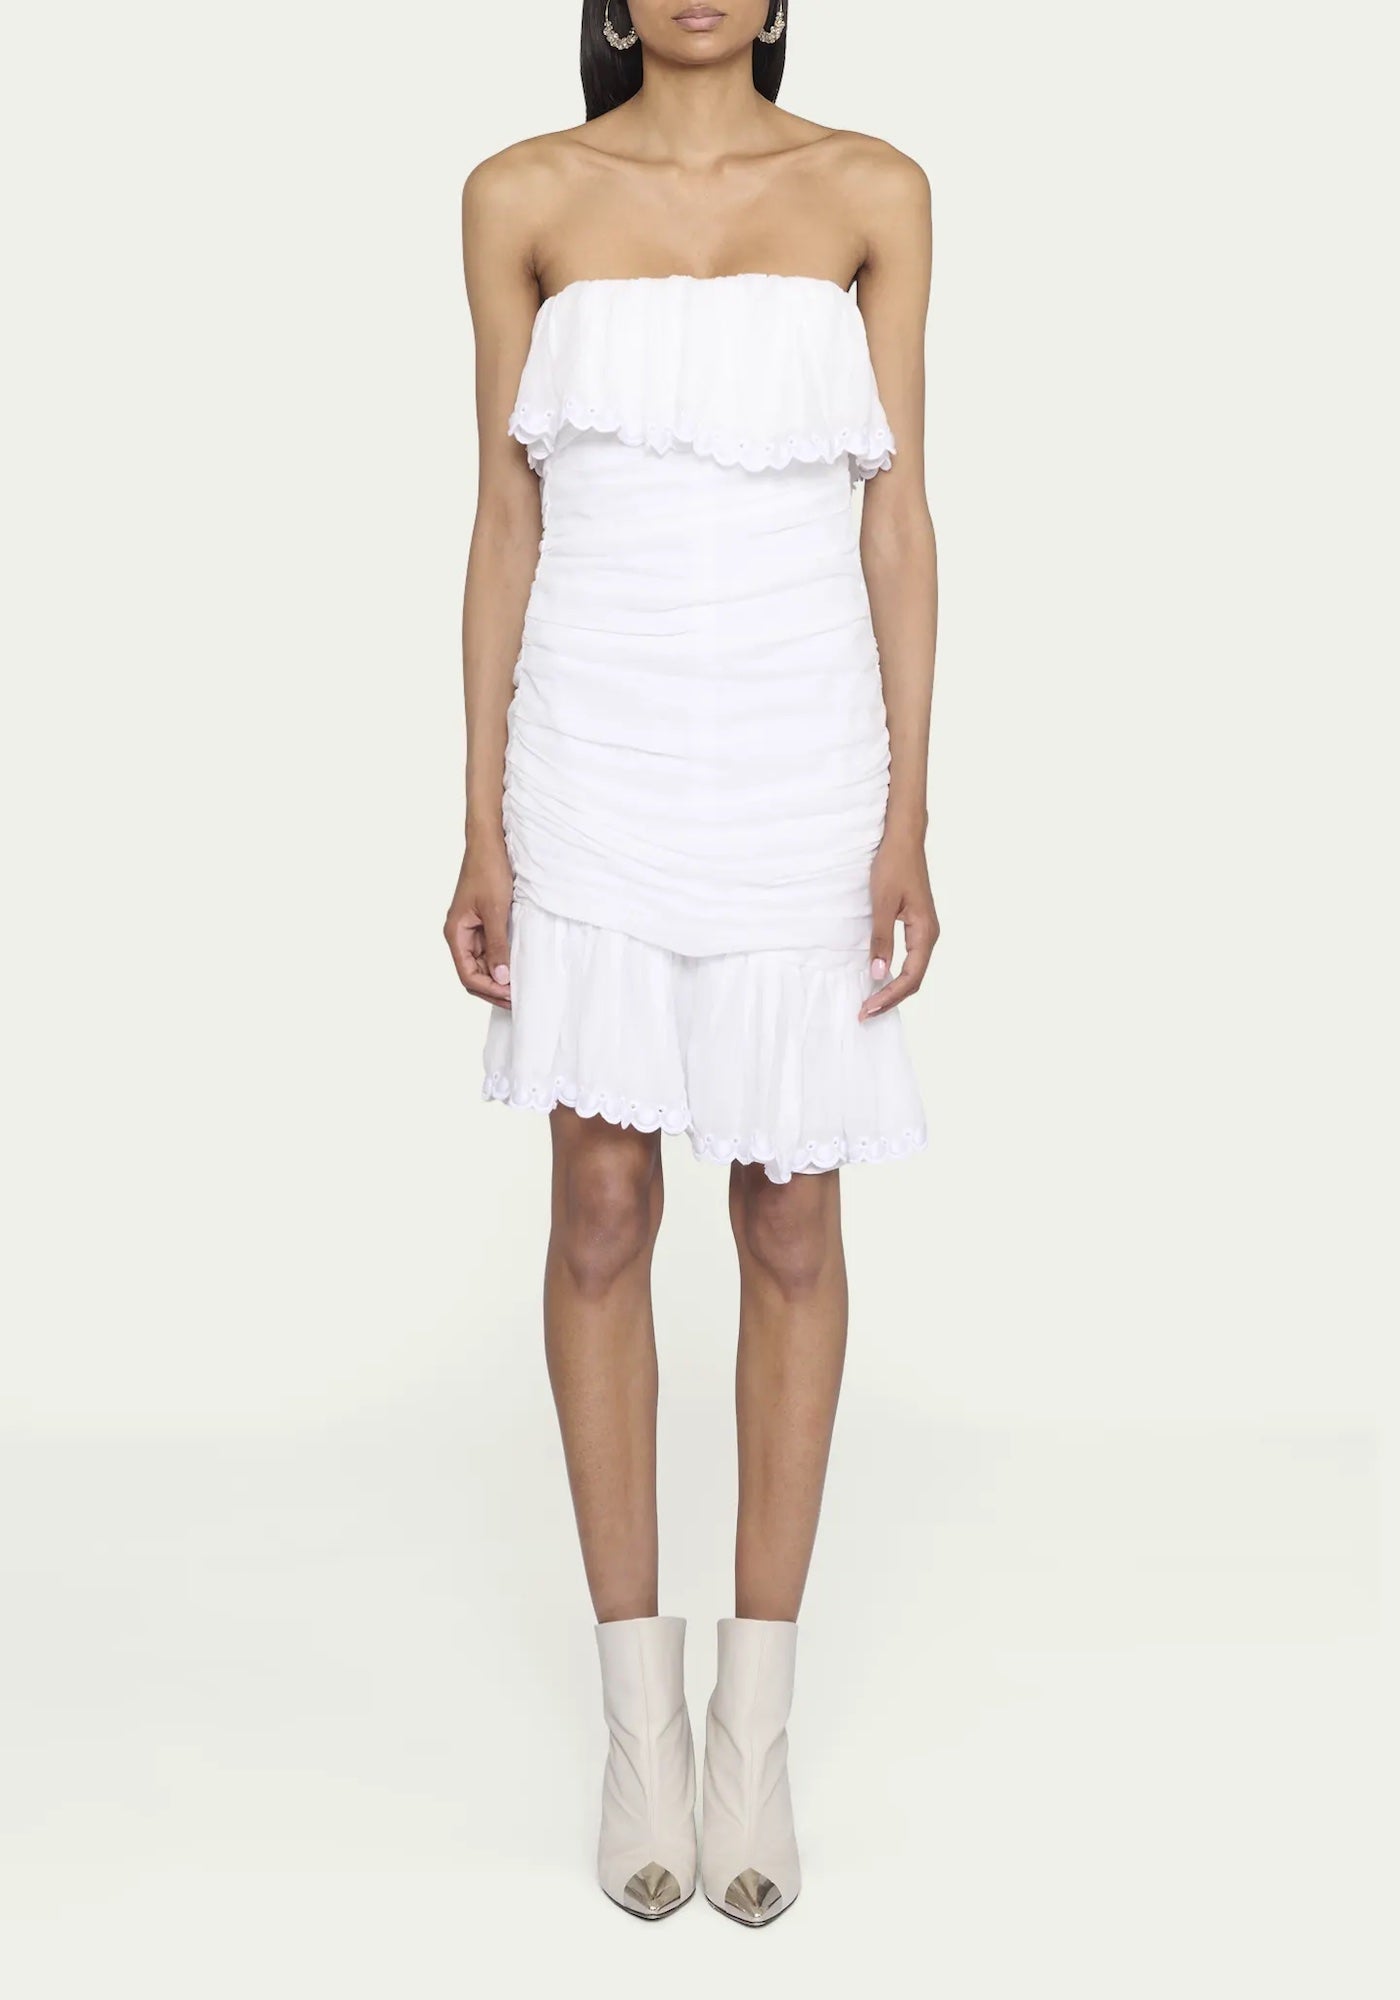 OXANI DRESS IN WHITE